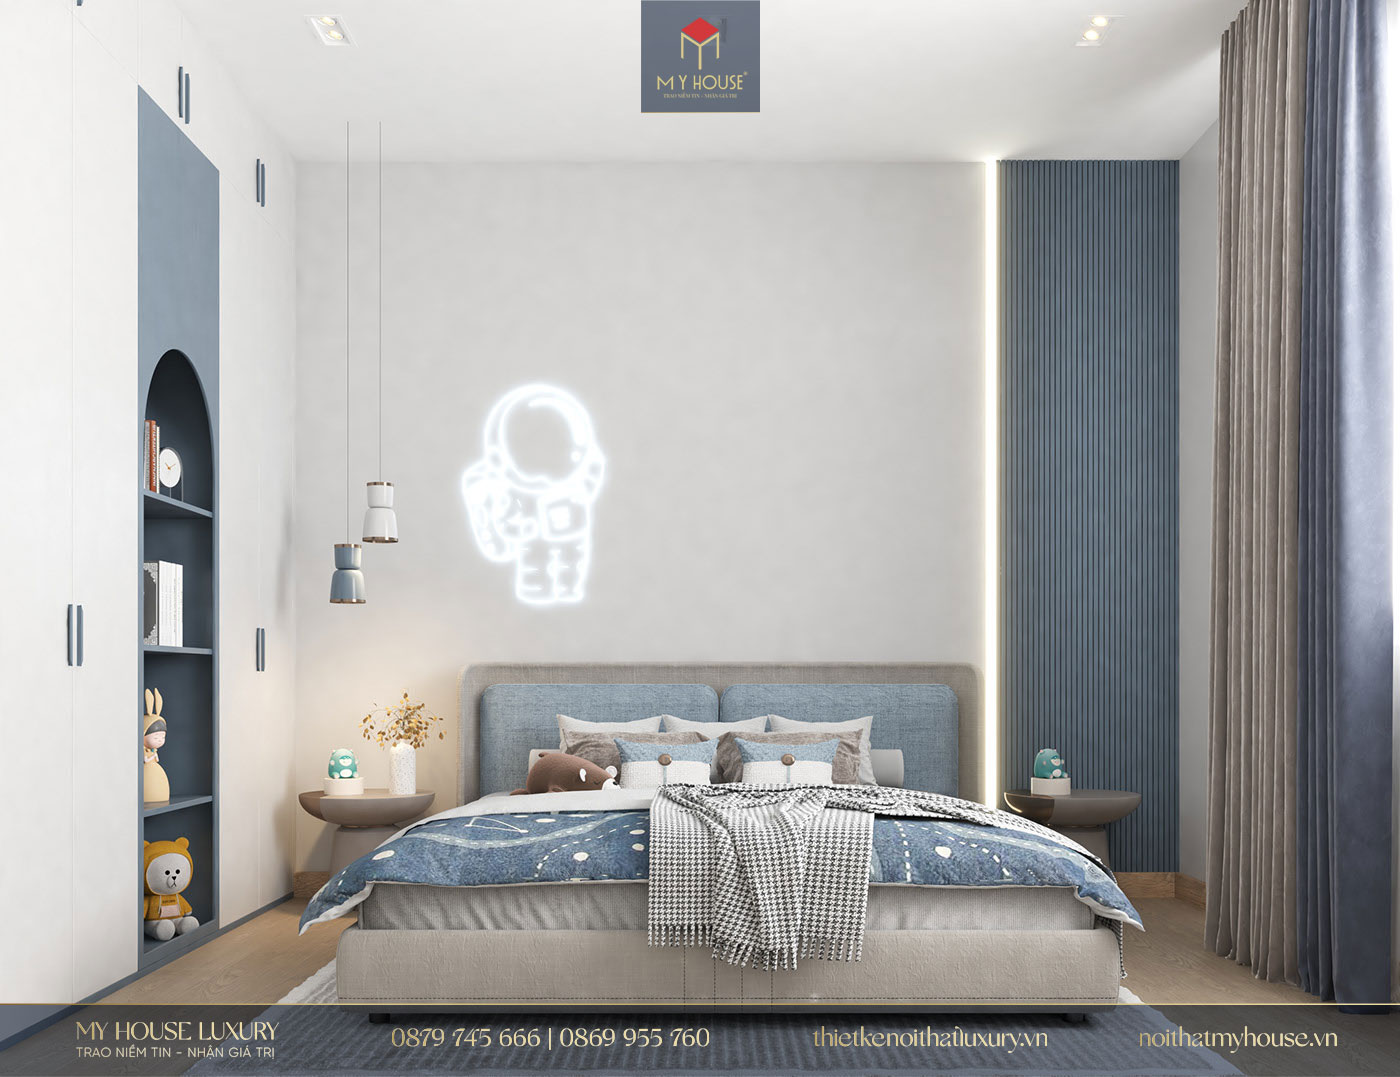  Phòng ngủ đơn giản và đẹp mắt với gam màu xanh